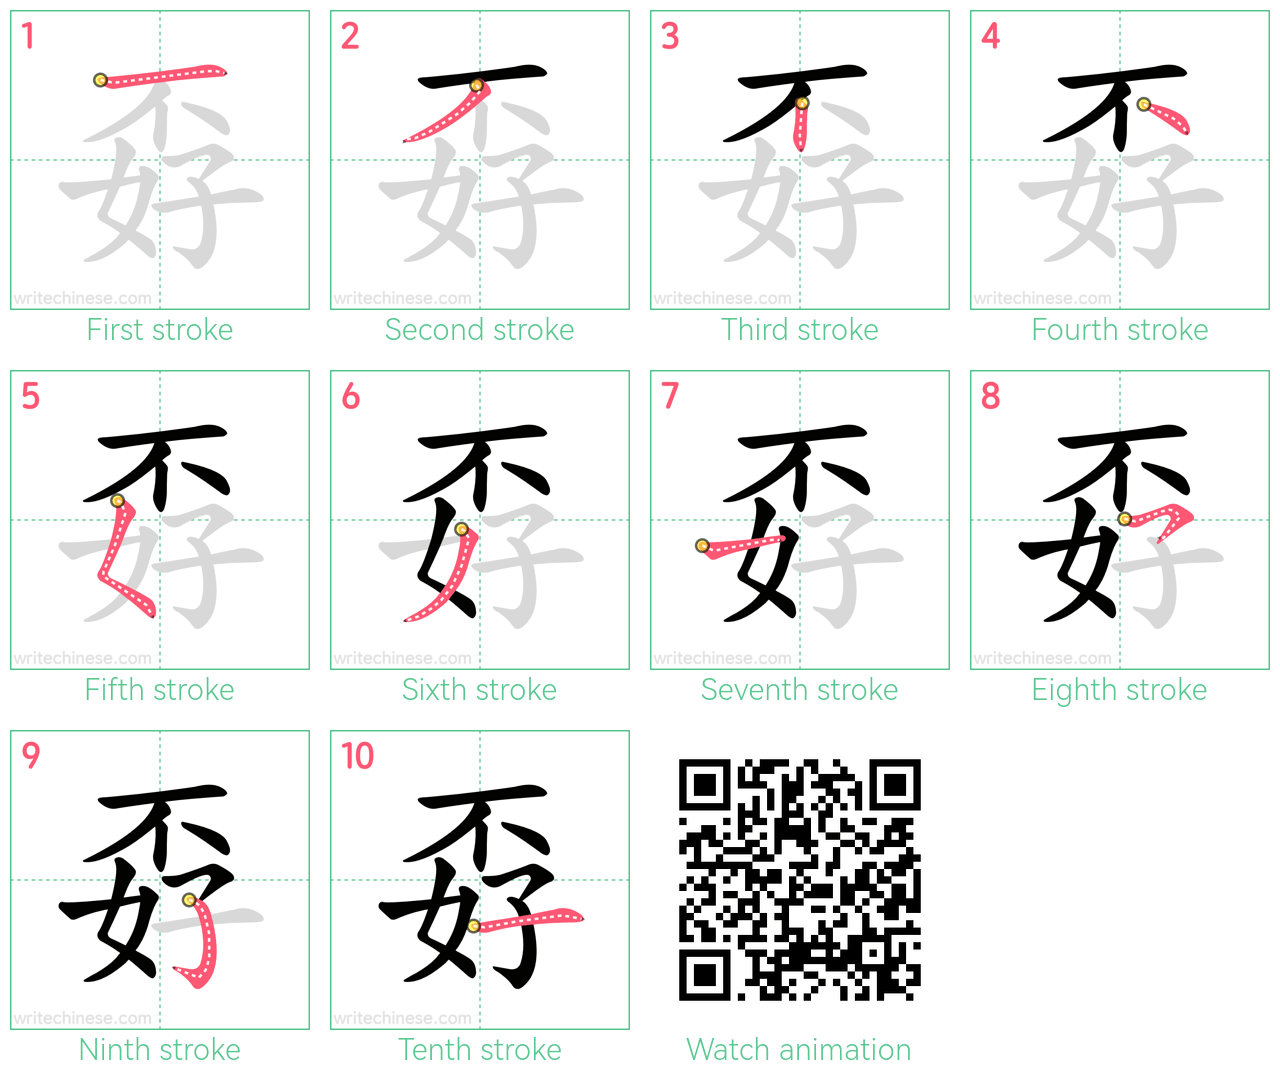 孬 step-by-step stroke order diagrams